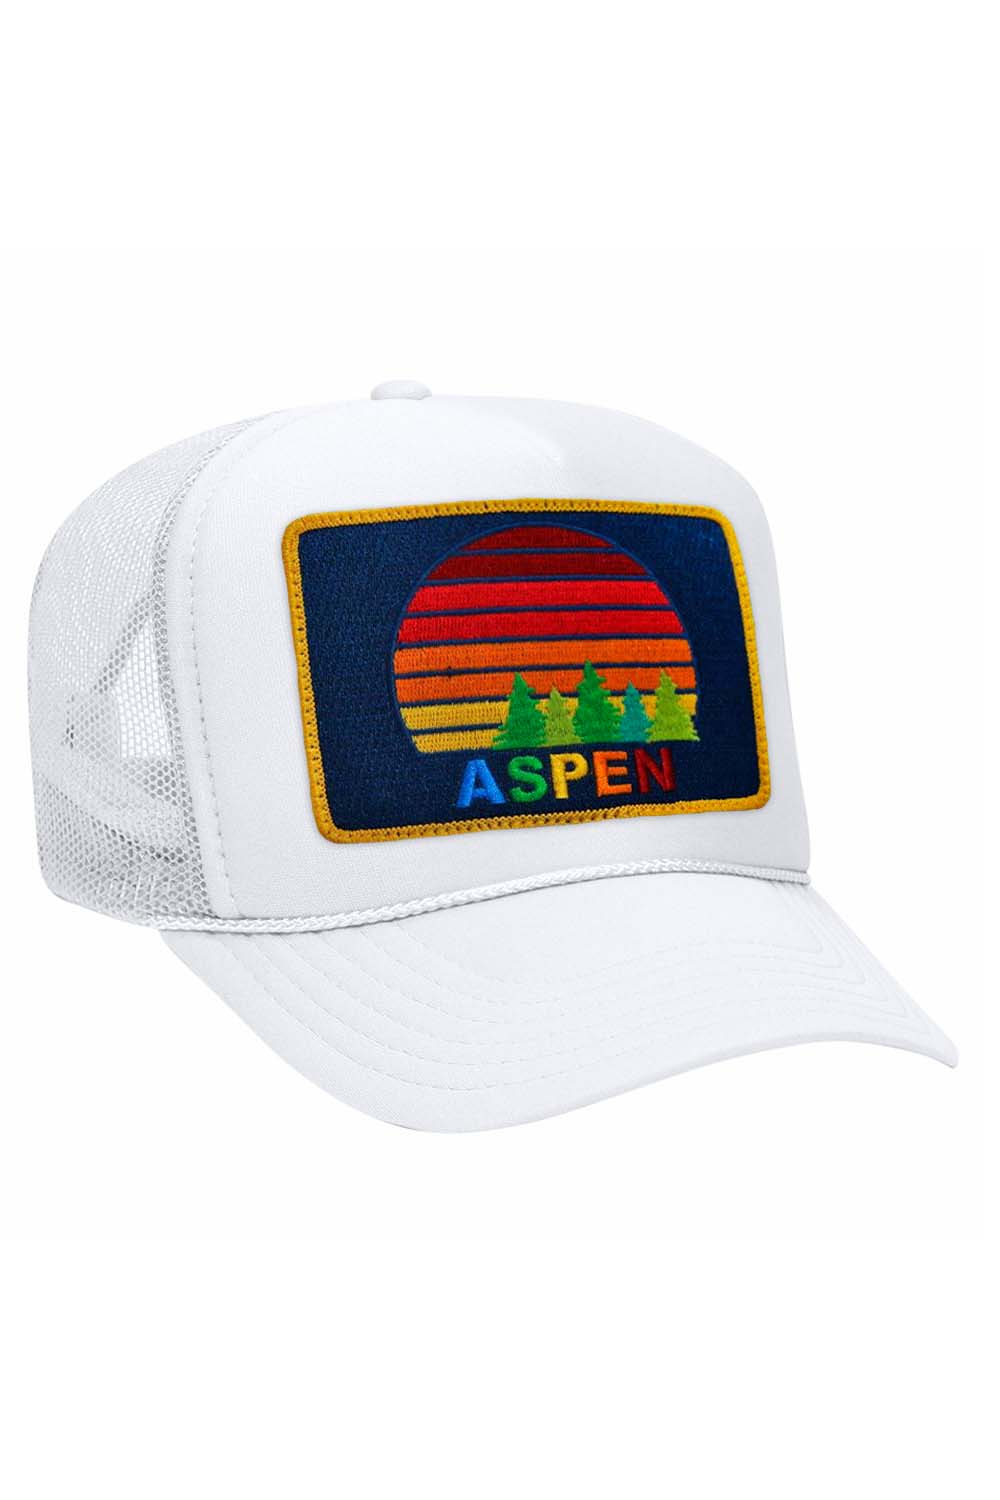 Aviator Nation Aspen Sunset Trucker Hat White